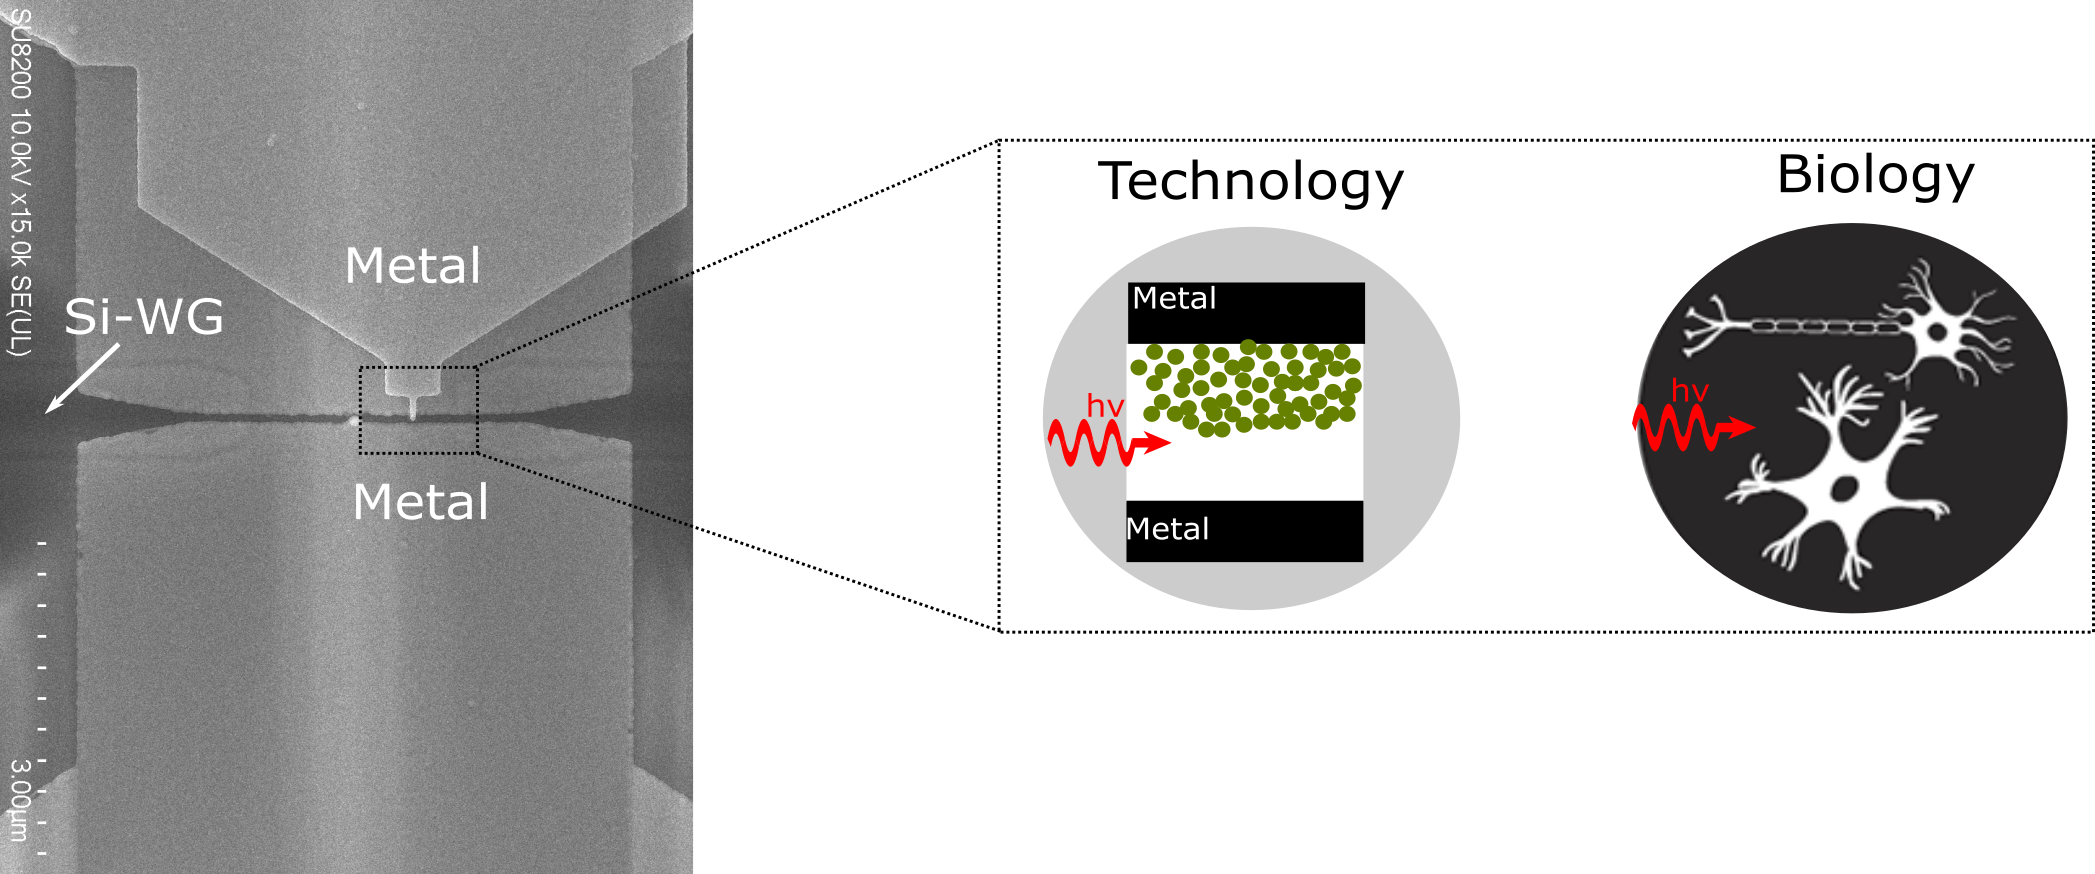 illustrations of optical-based memristor 